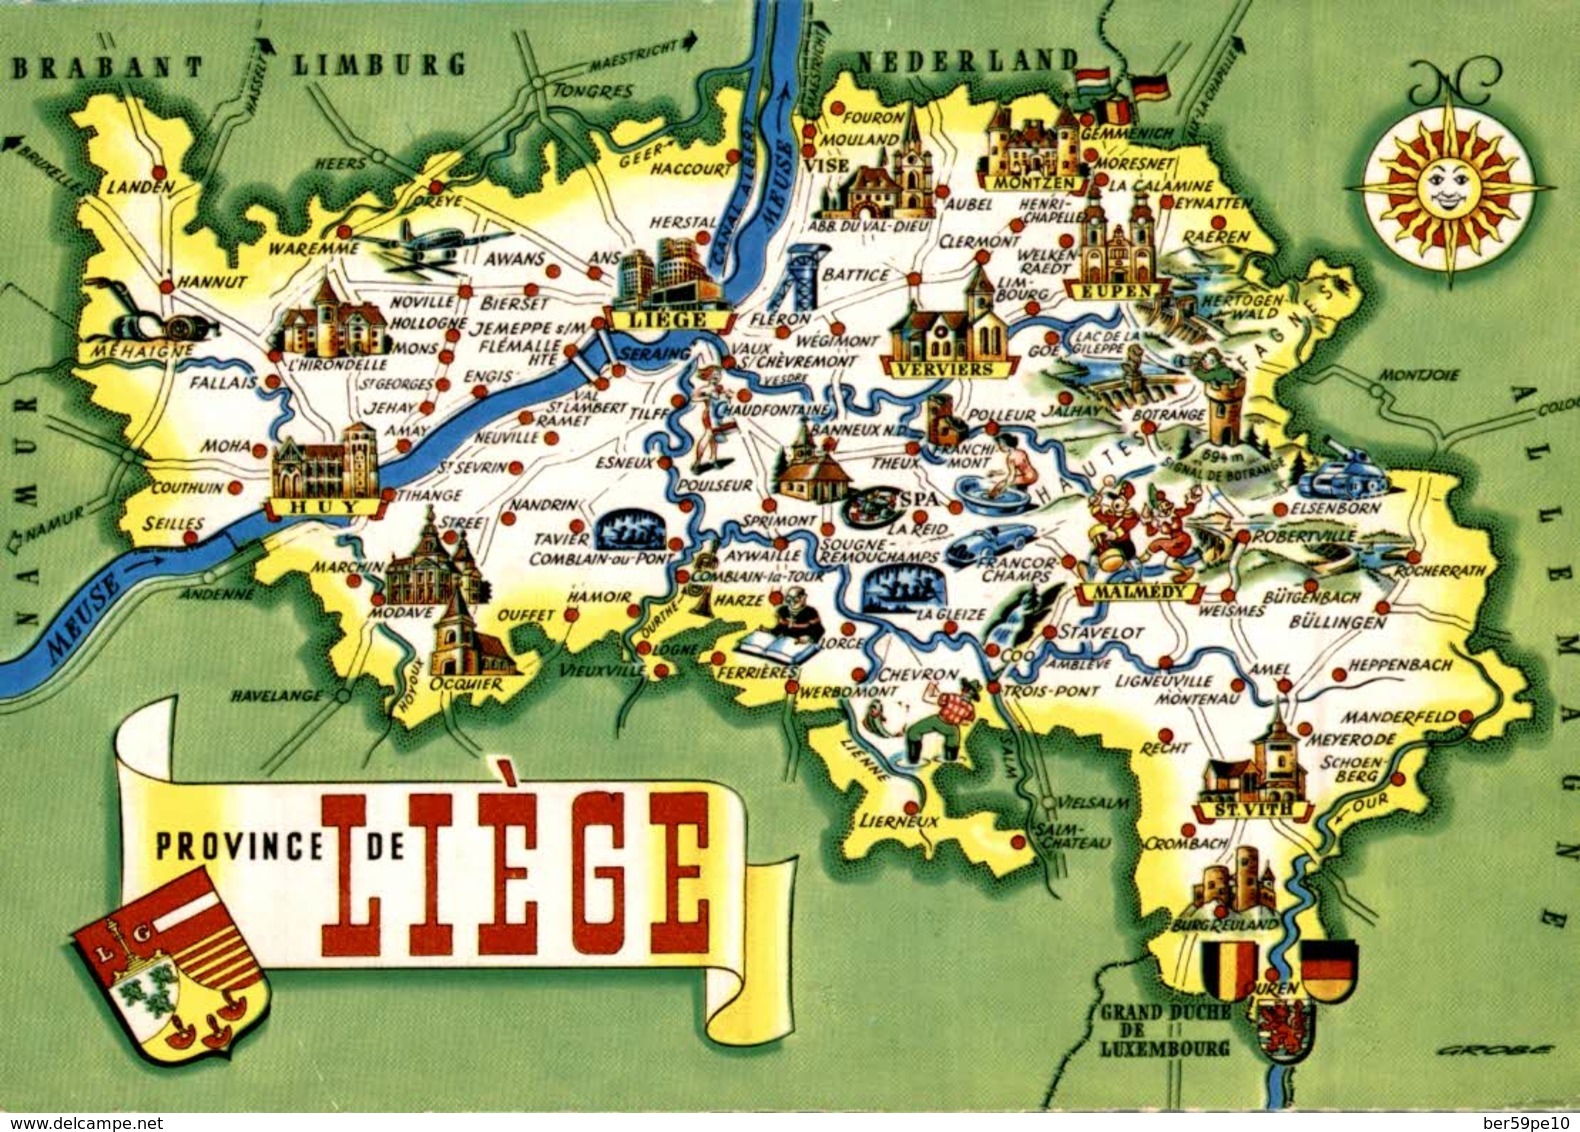 CARTE LE LIEGE : cartes de Le Liège 37460